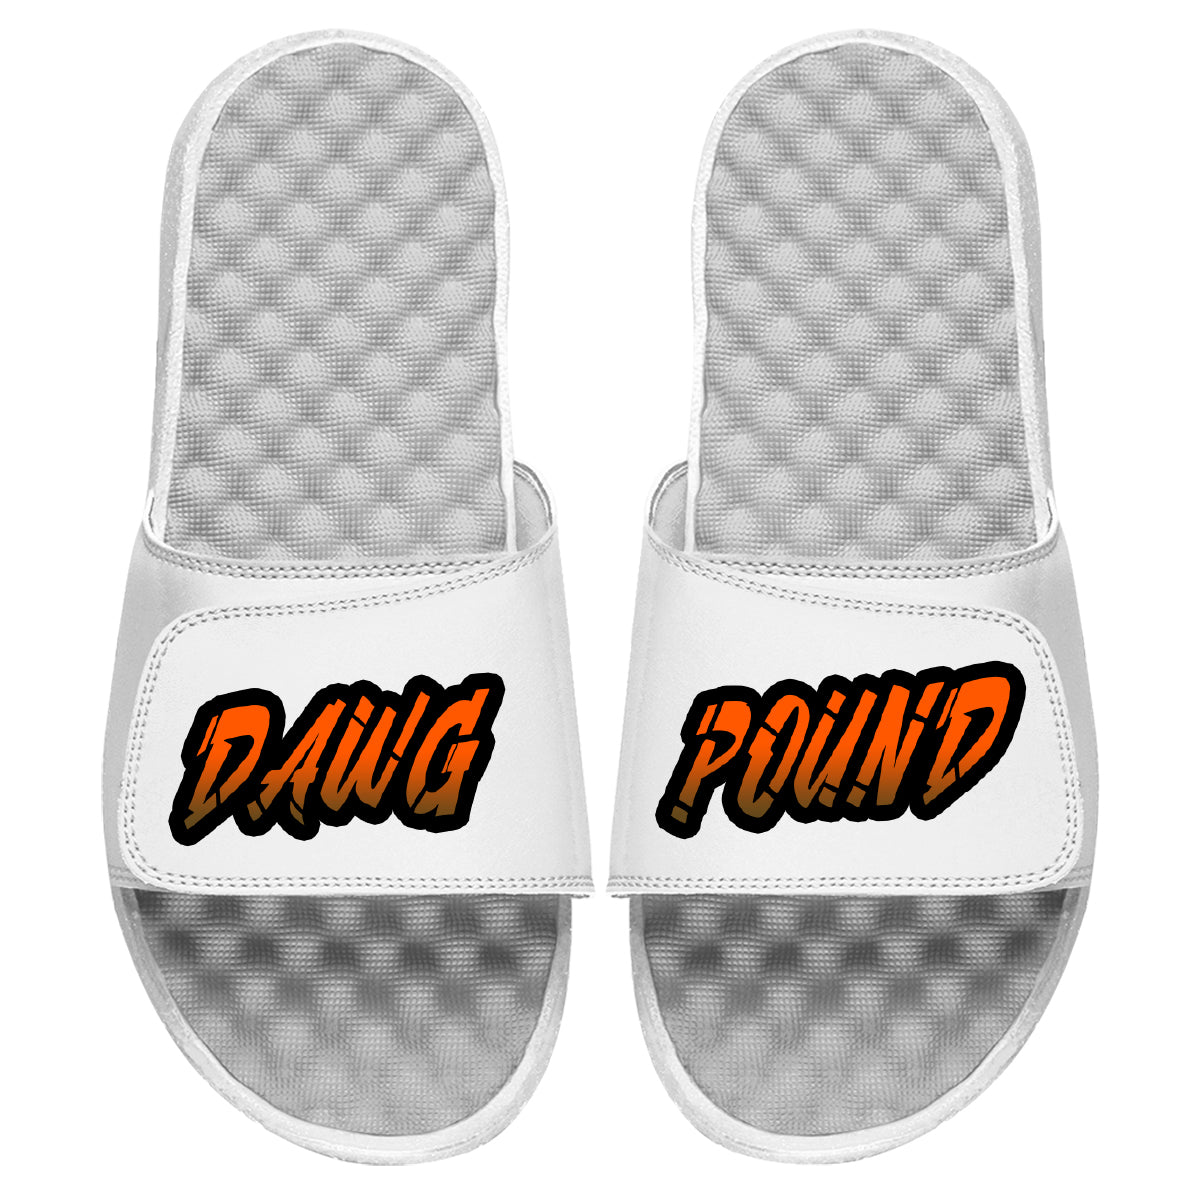 Dawg Pound-White Slides